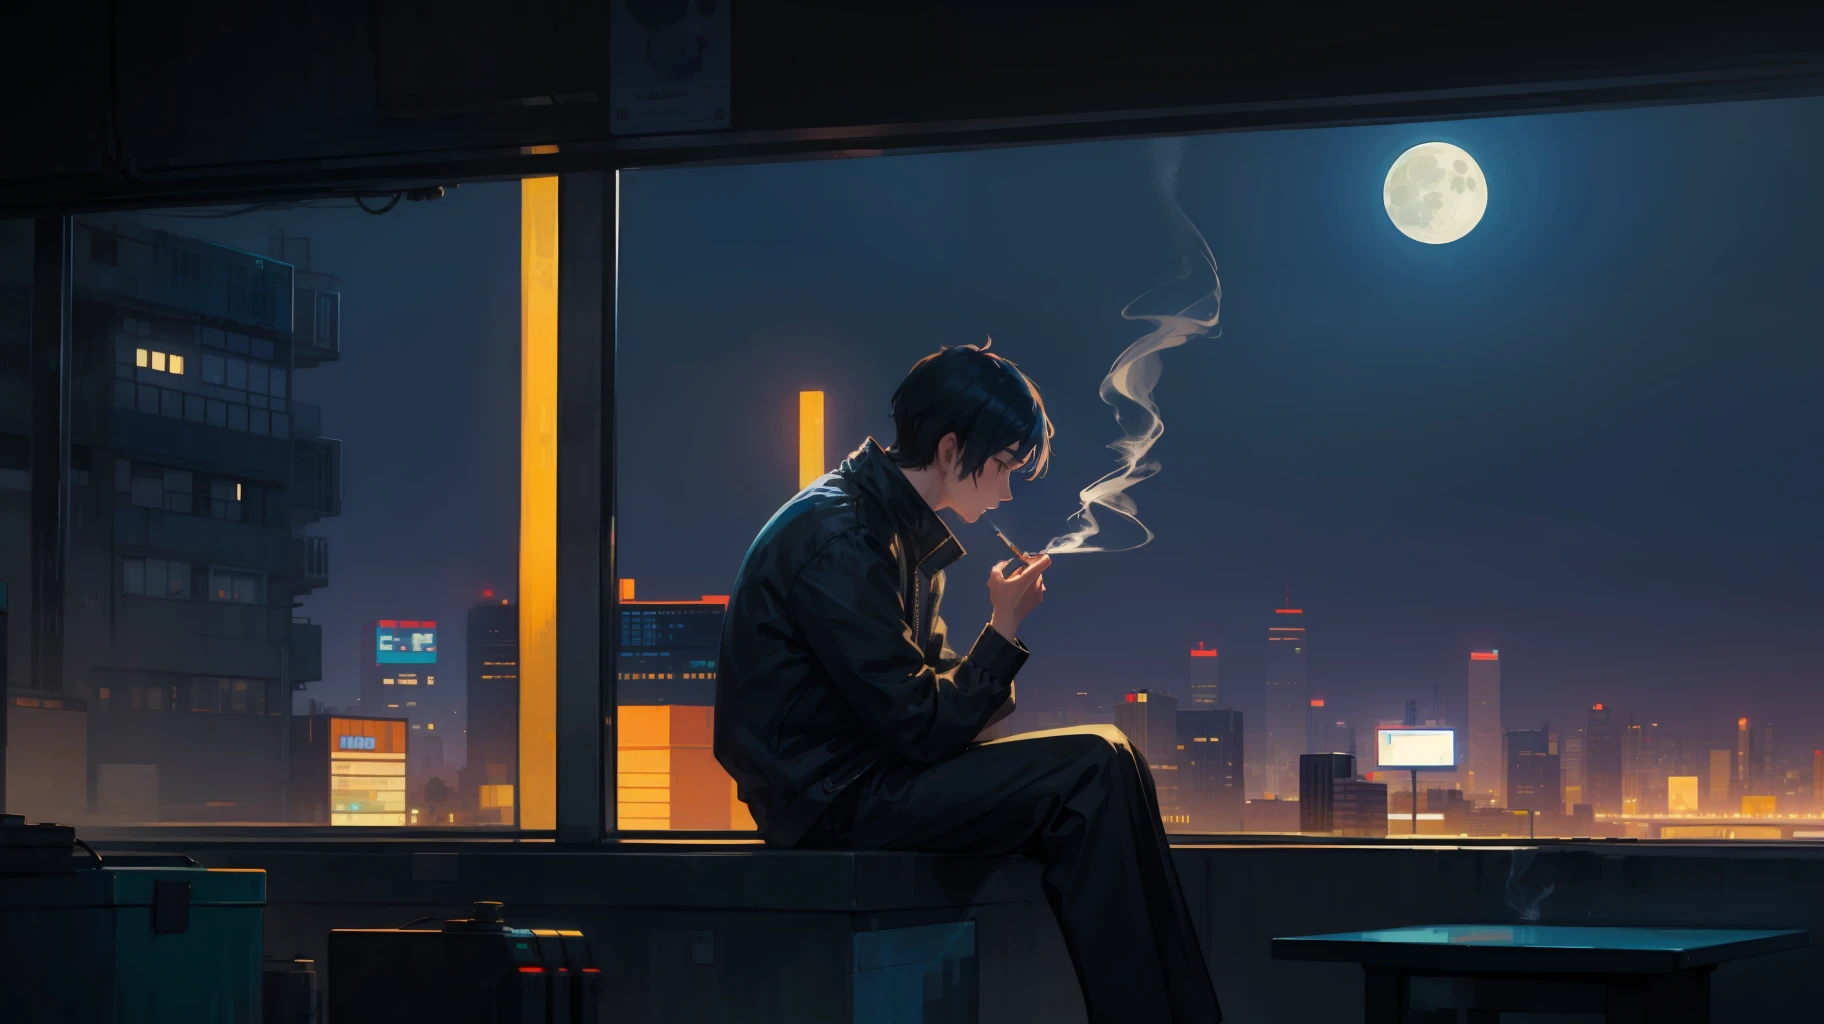 ピクセルアート 2D 男性、隣の窓から月を眺めながらタバコを吸う、サイバーパンク風、街の明かり、未来都市、HD 超詳細 2D